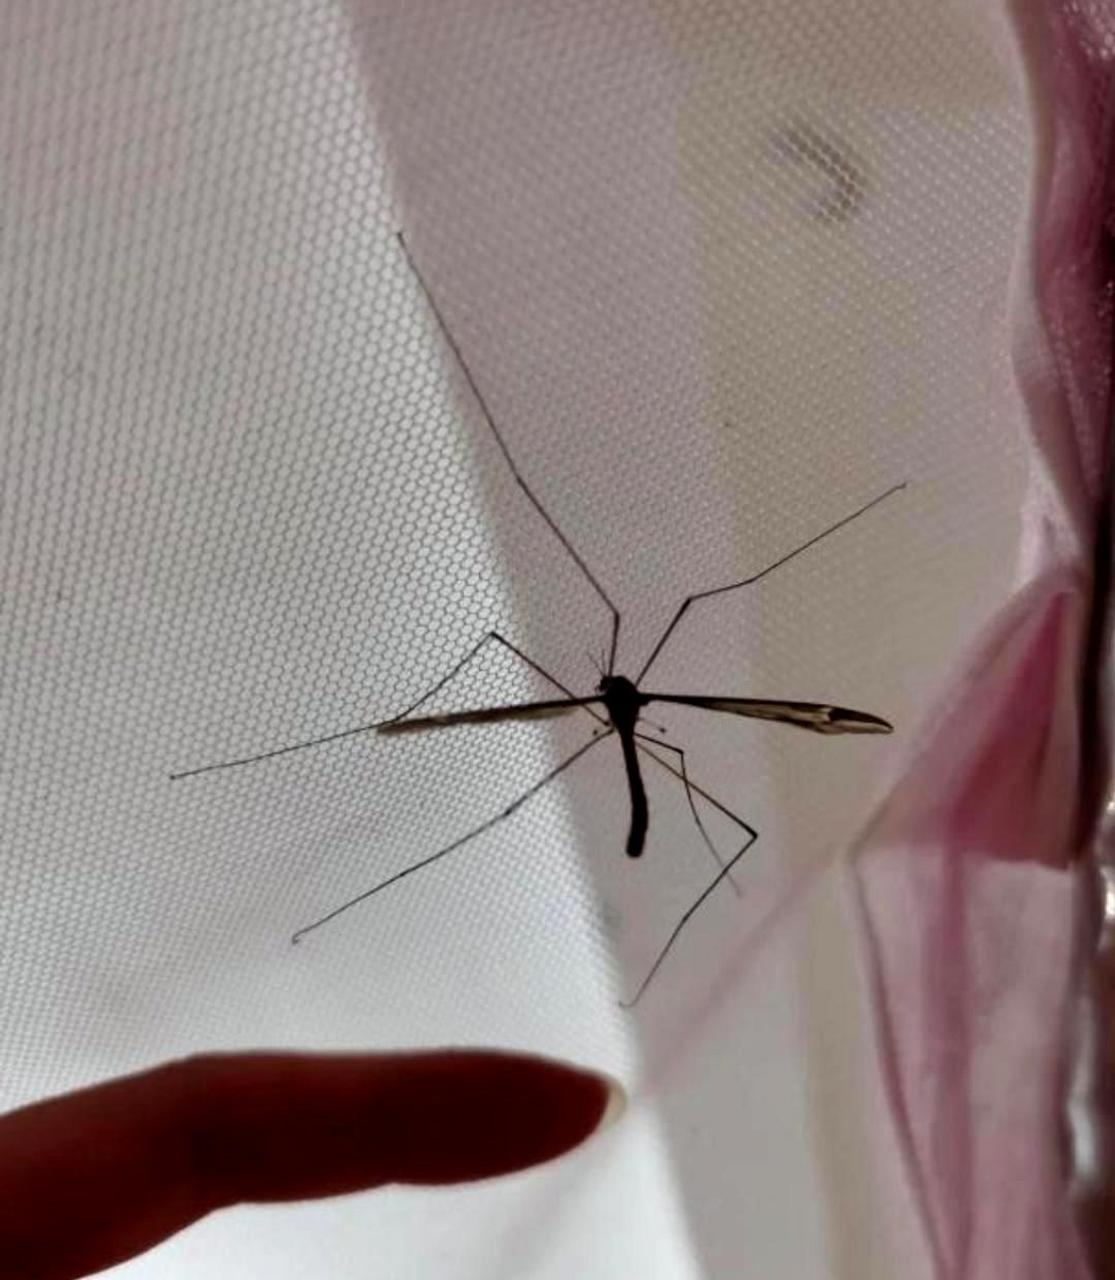 或许北方的朋友们从未见过如此巨大的蚊子,它们就像是小型飞机一样